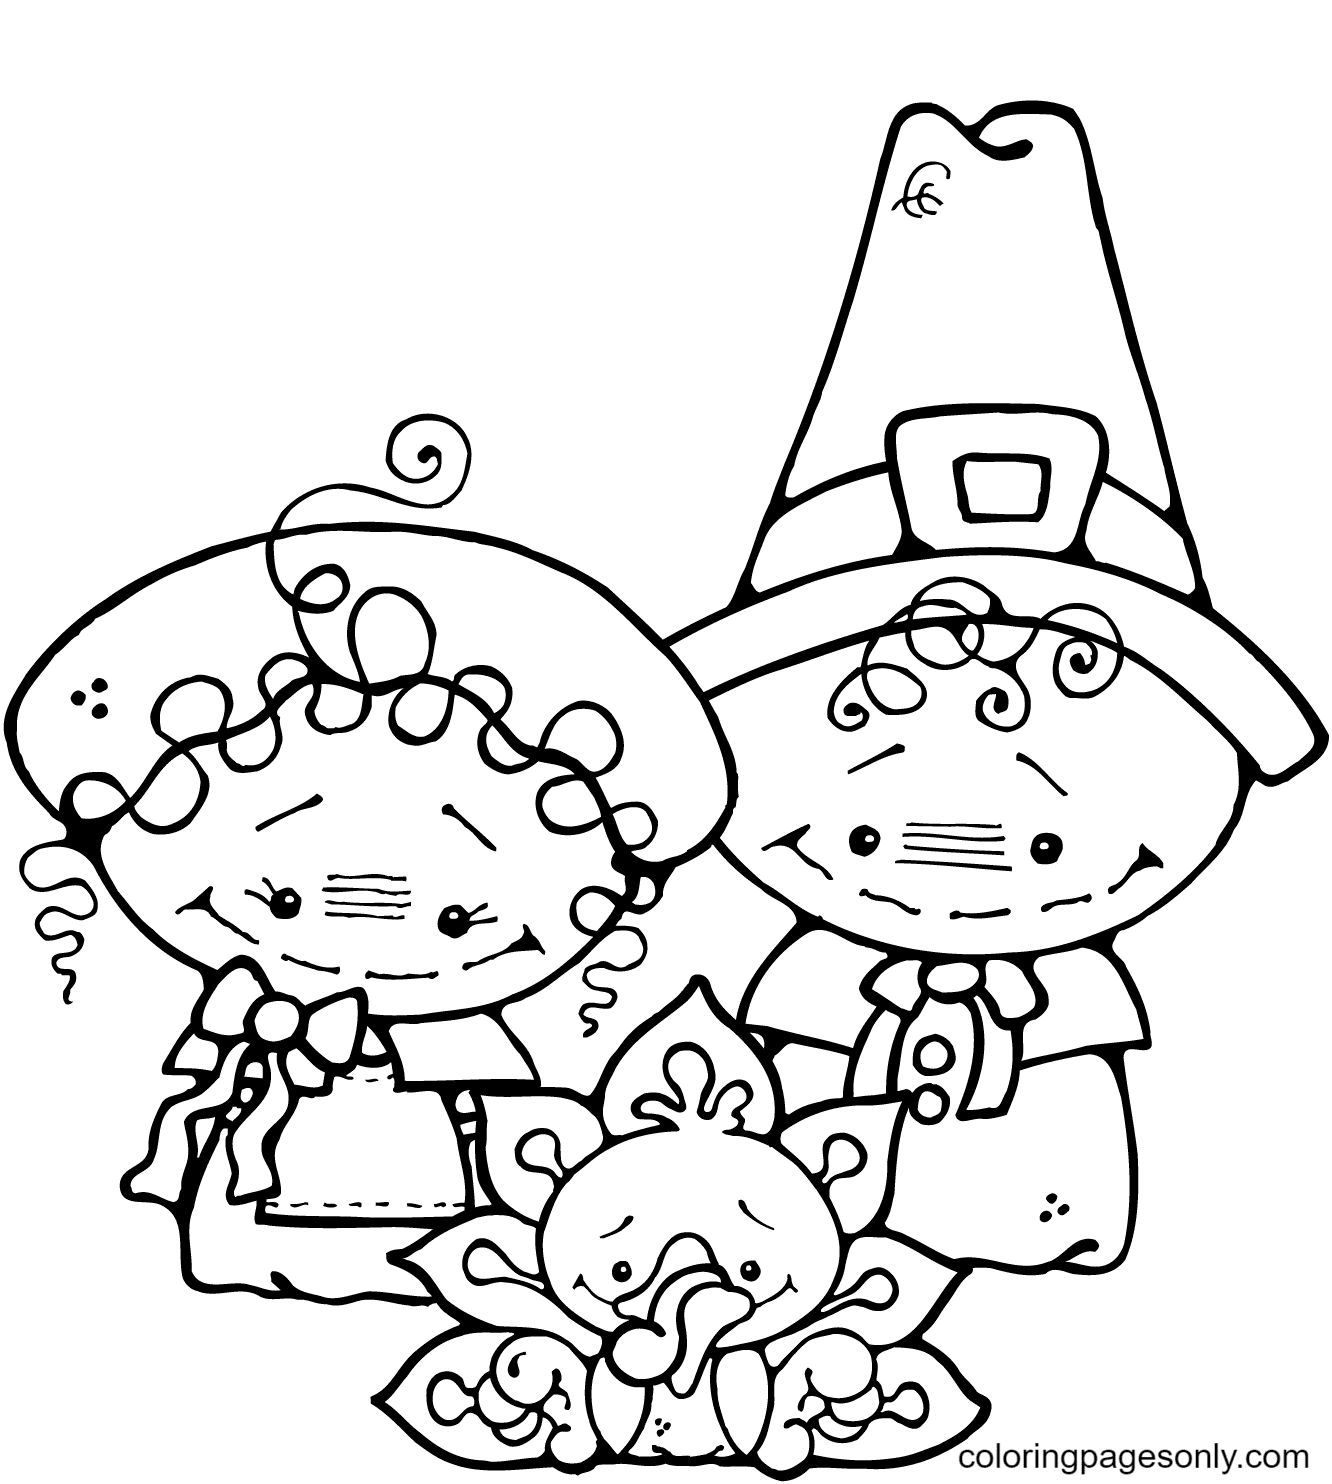 Desenho de menino e menina peregrinos com peru para colorir